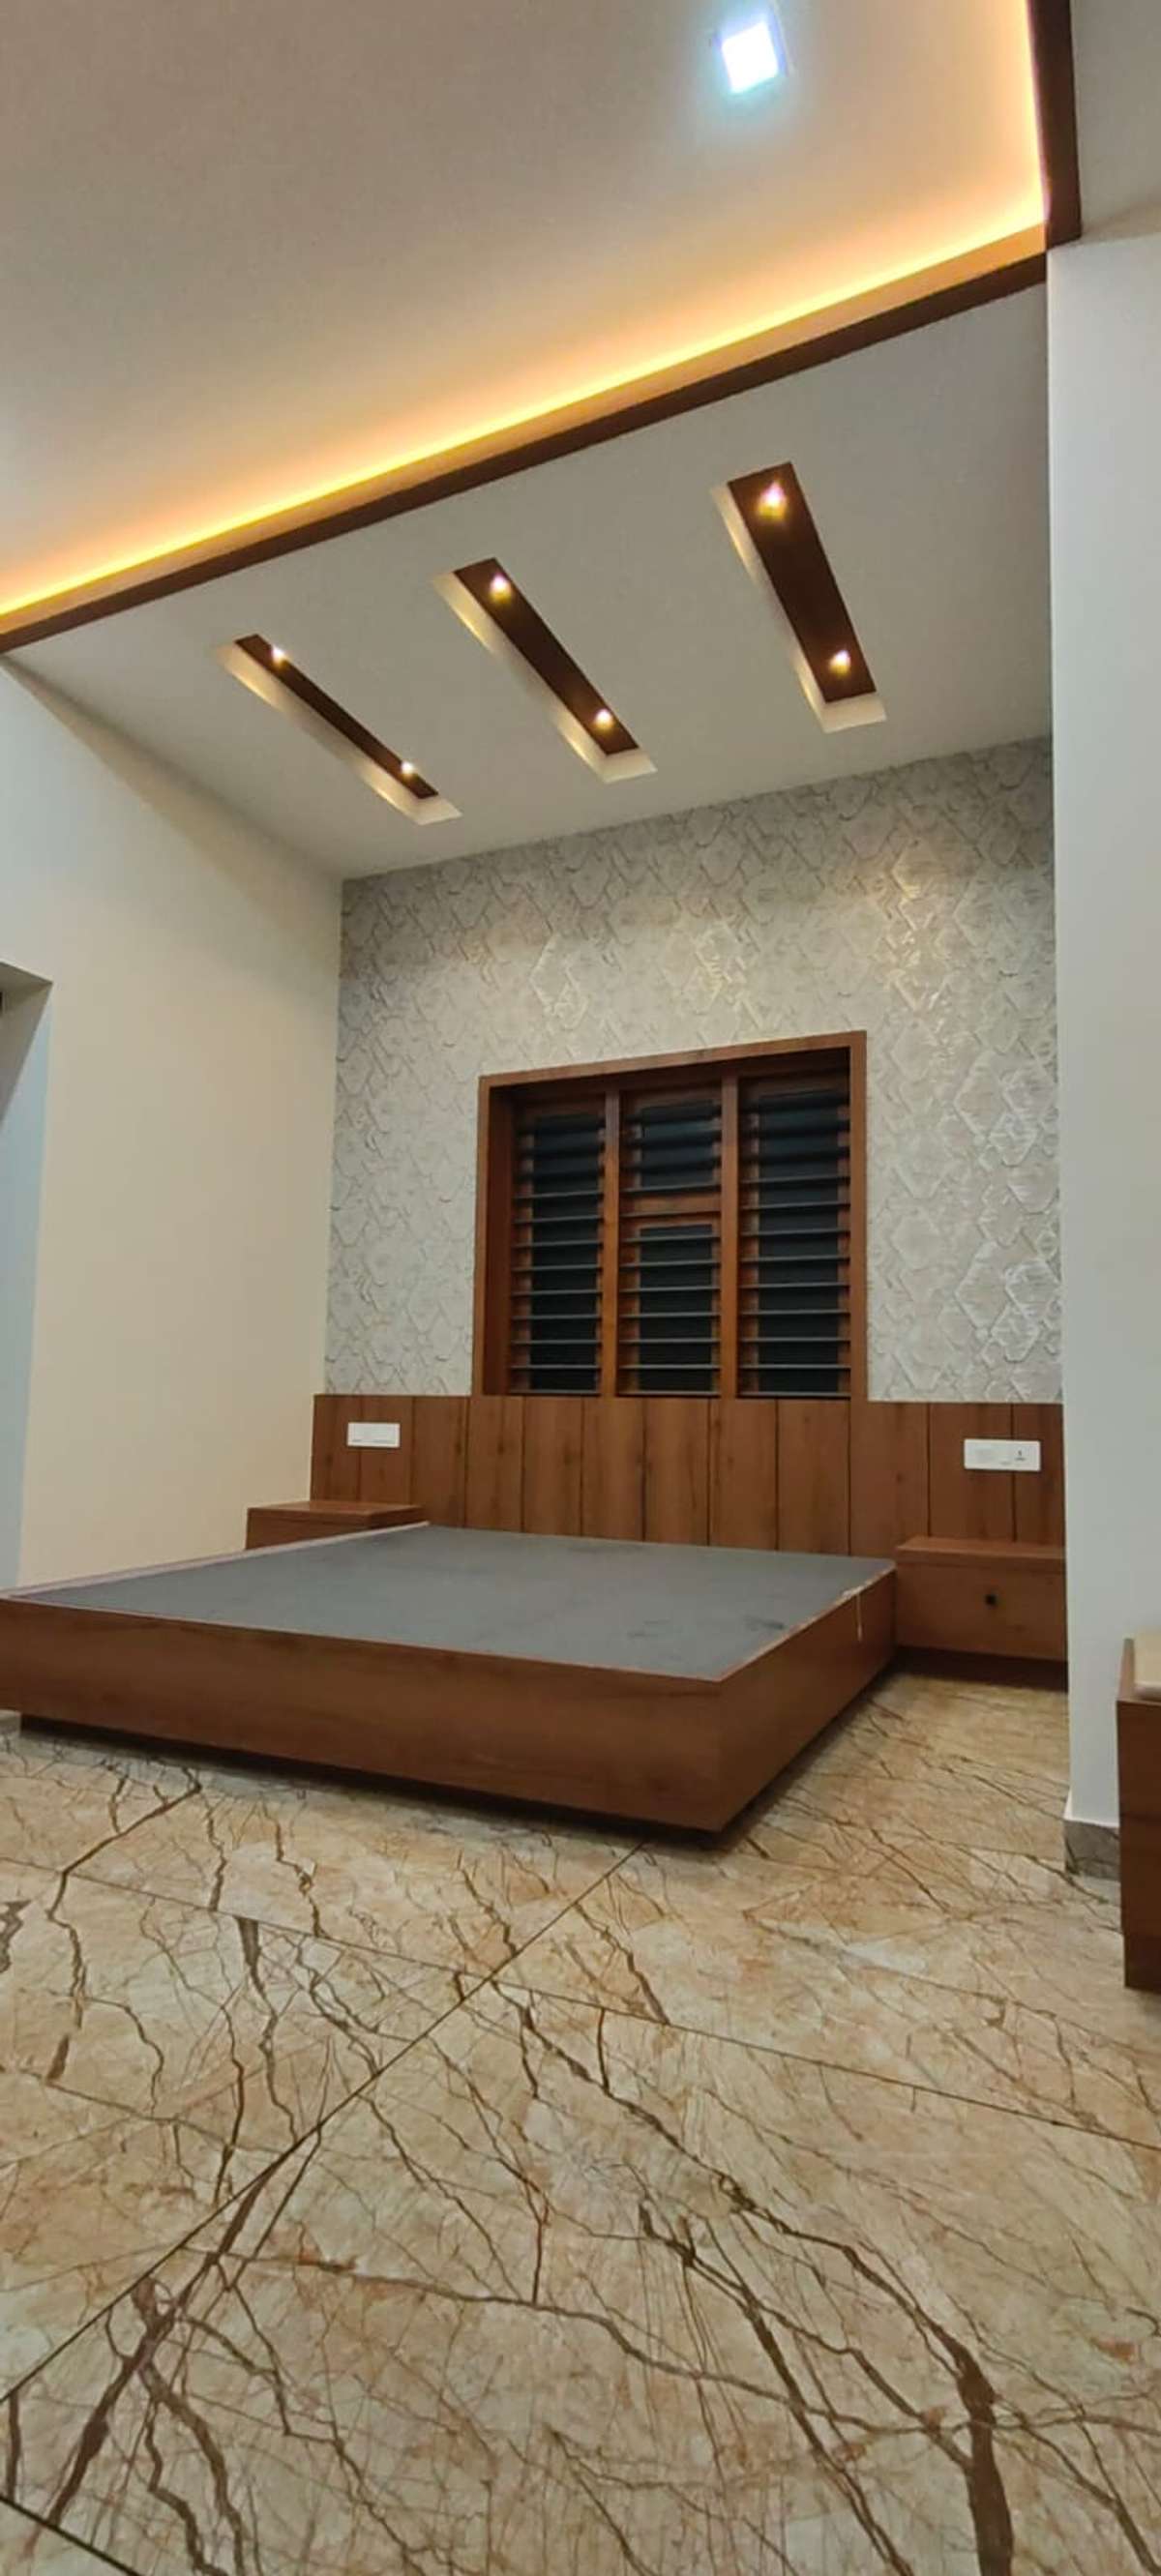 Designs by Interior Designer designer interior 9744285839, Malappuram | Kolo